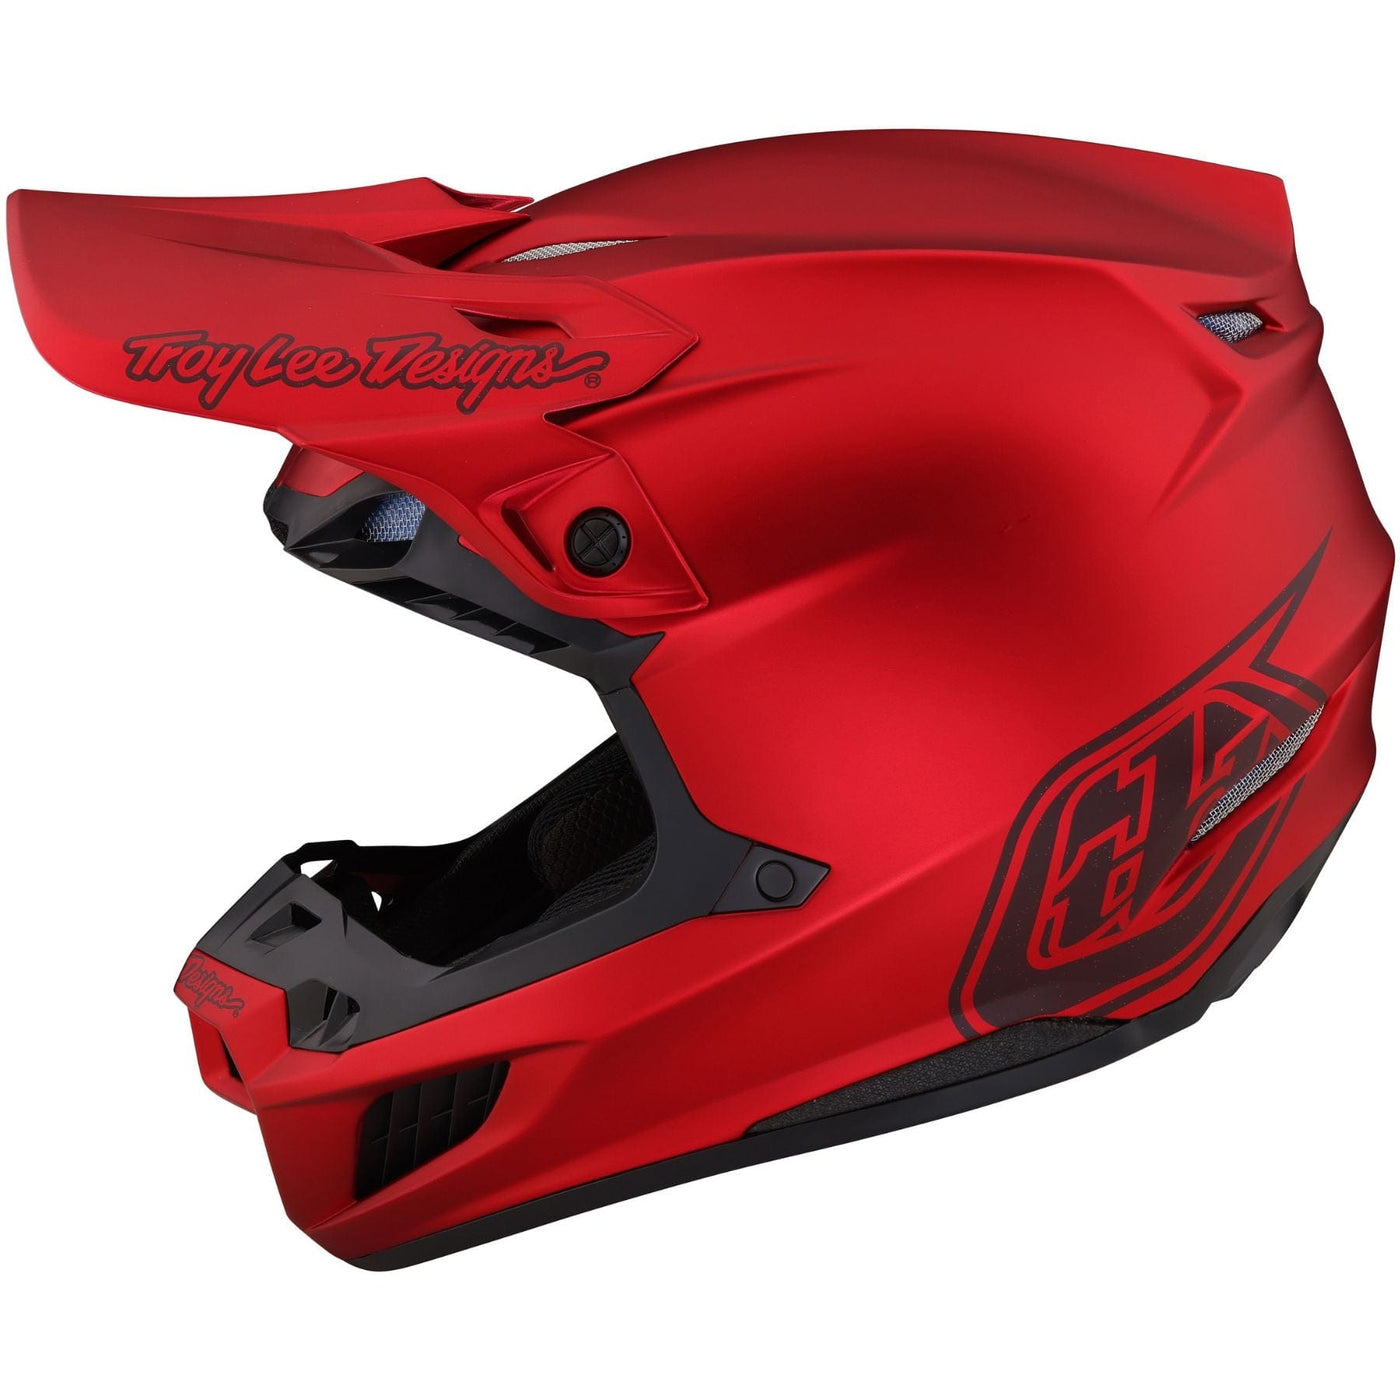  Troy Lee Designs SE5  Helmet - red